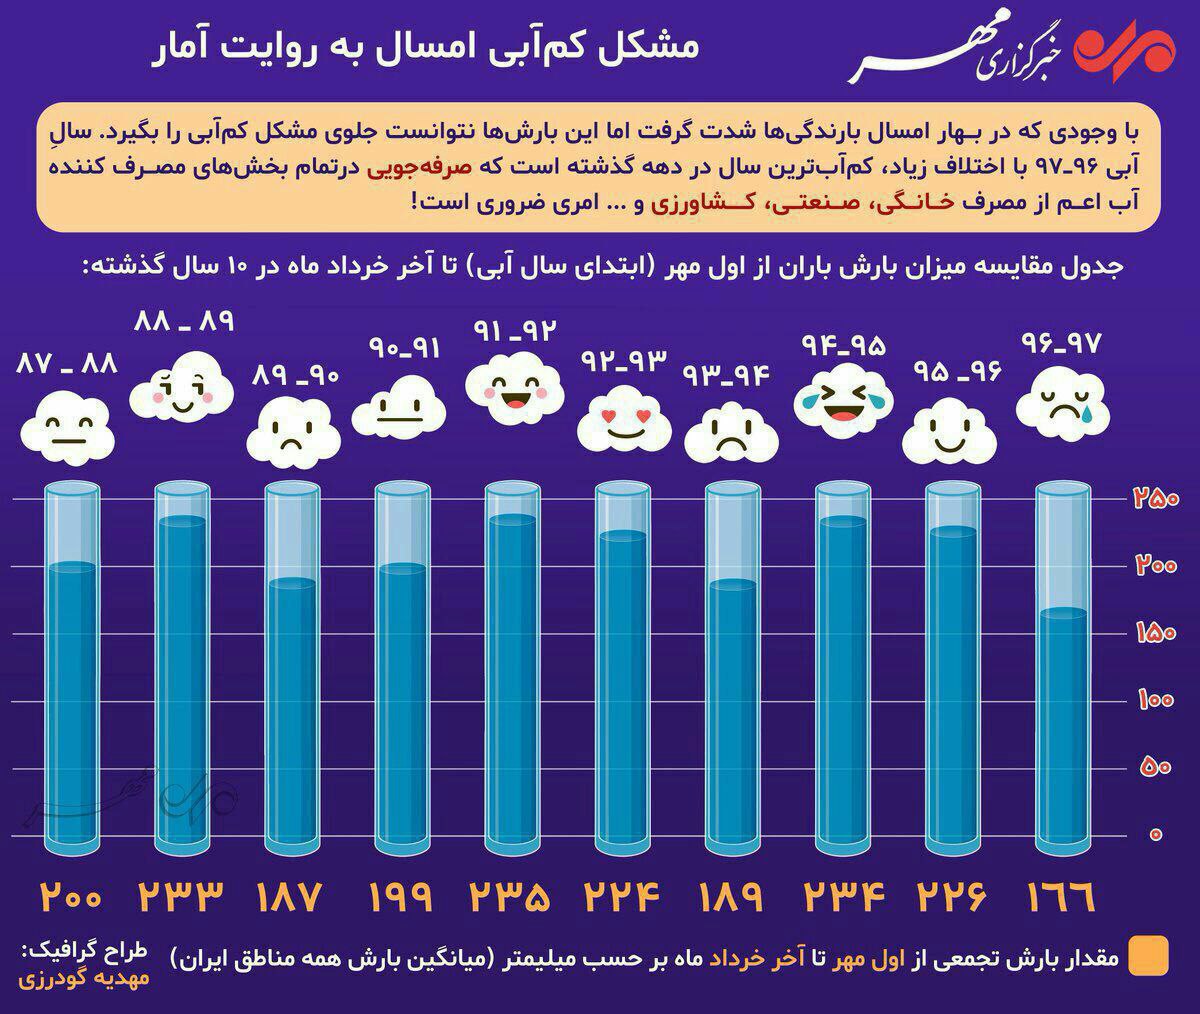   مشکل کم آبی امسال به روایت آمار  منبع: خبرگزاری مهر 